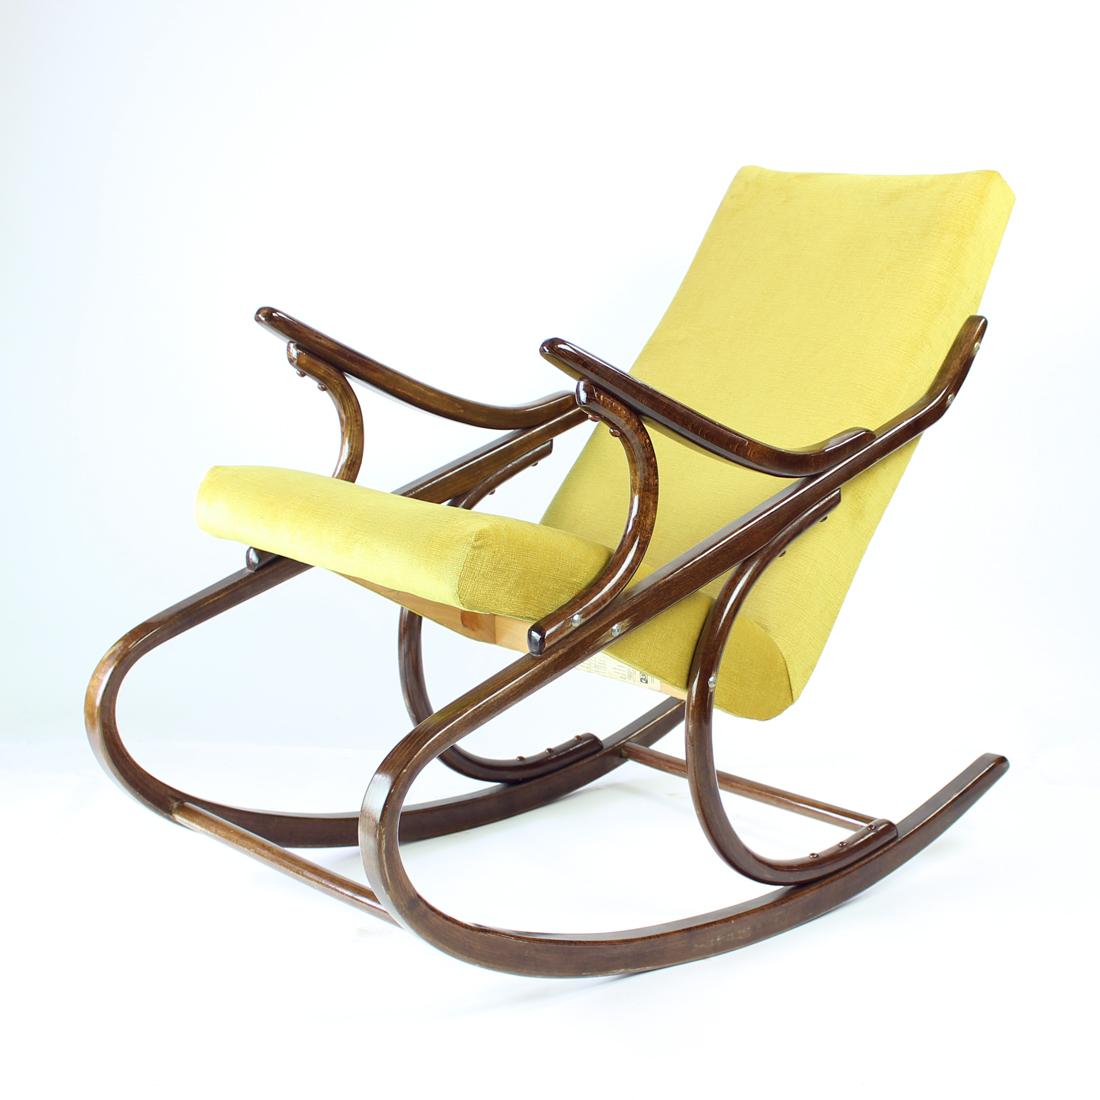 Schöner originaler Schaukelsessel aus den 1960er Jahren. Produziert von TON, Original Label noch vorhanden. Der Stuhl ist in einem schönen Zustand. Die Konstruktion ist original in Bugholz-Eiche mit Hochglanz-Lackierung. Die Lackierung ist original.